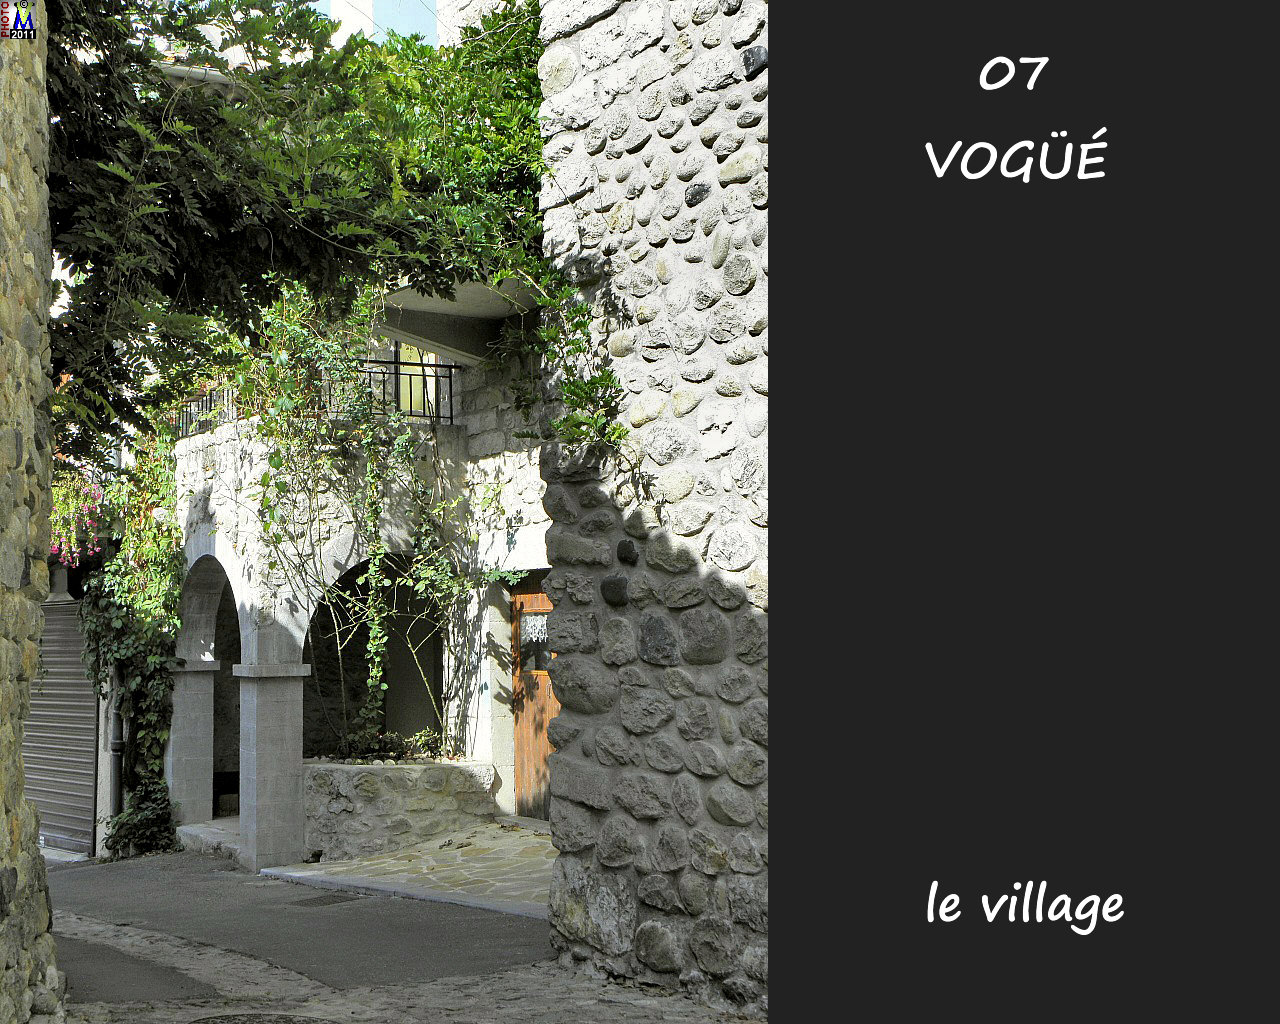 07VOGUE_village_118.jpg